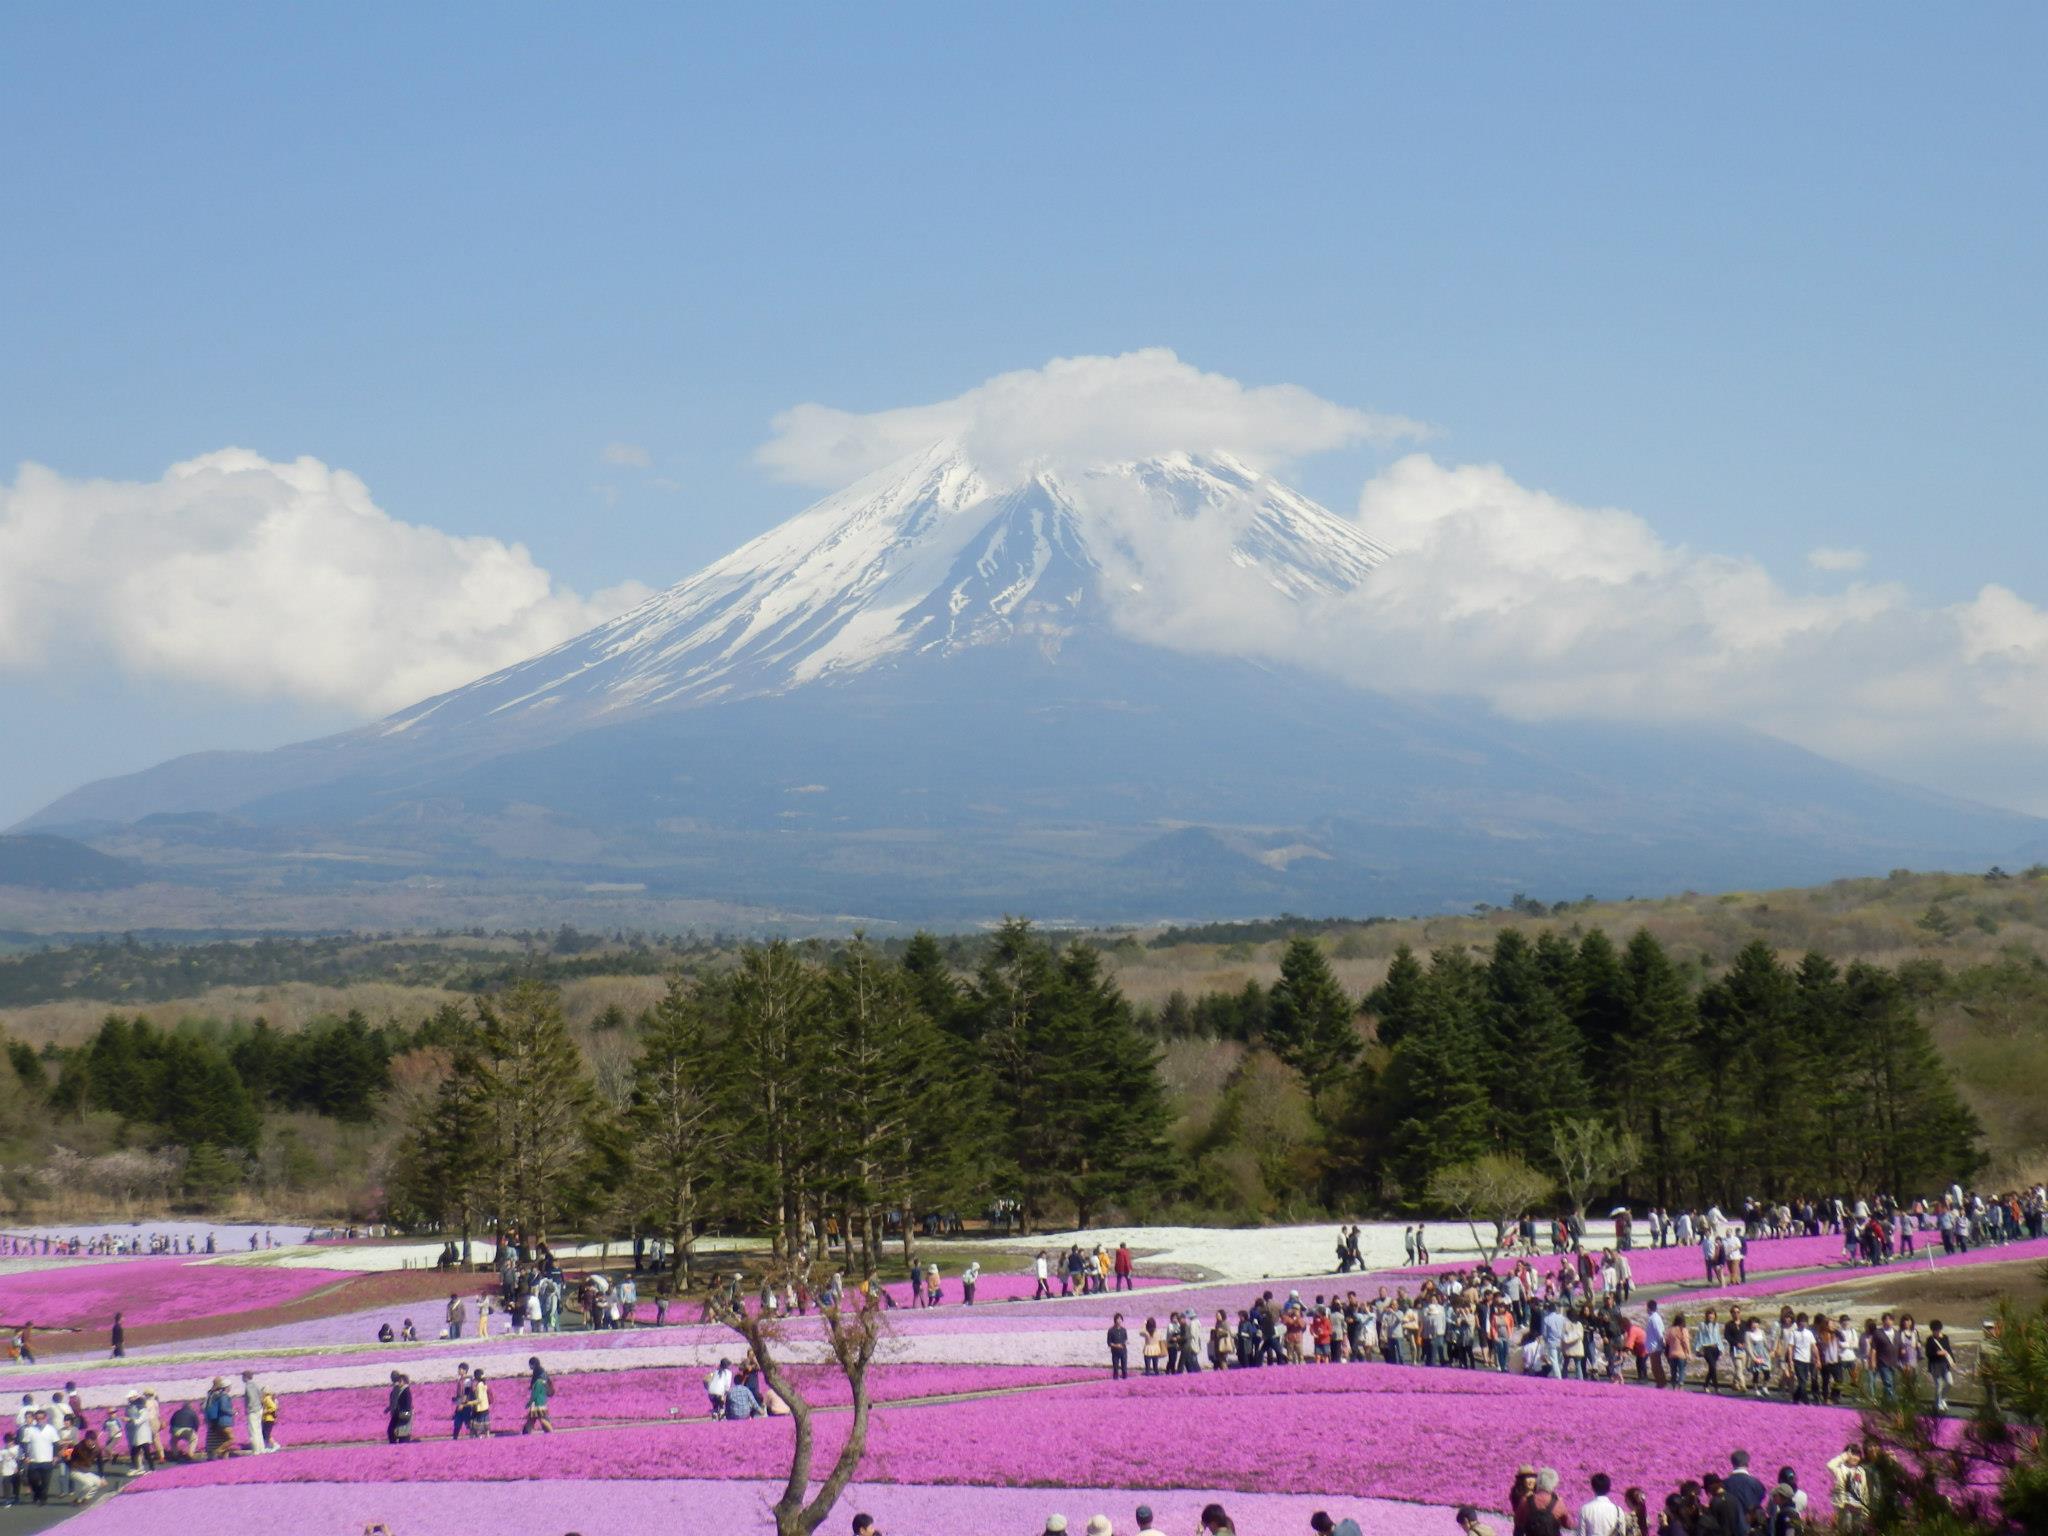 芝桜まつり: Mt. Fuji watched over the garden as clouds sprinkle snow on its peak